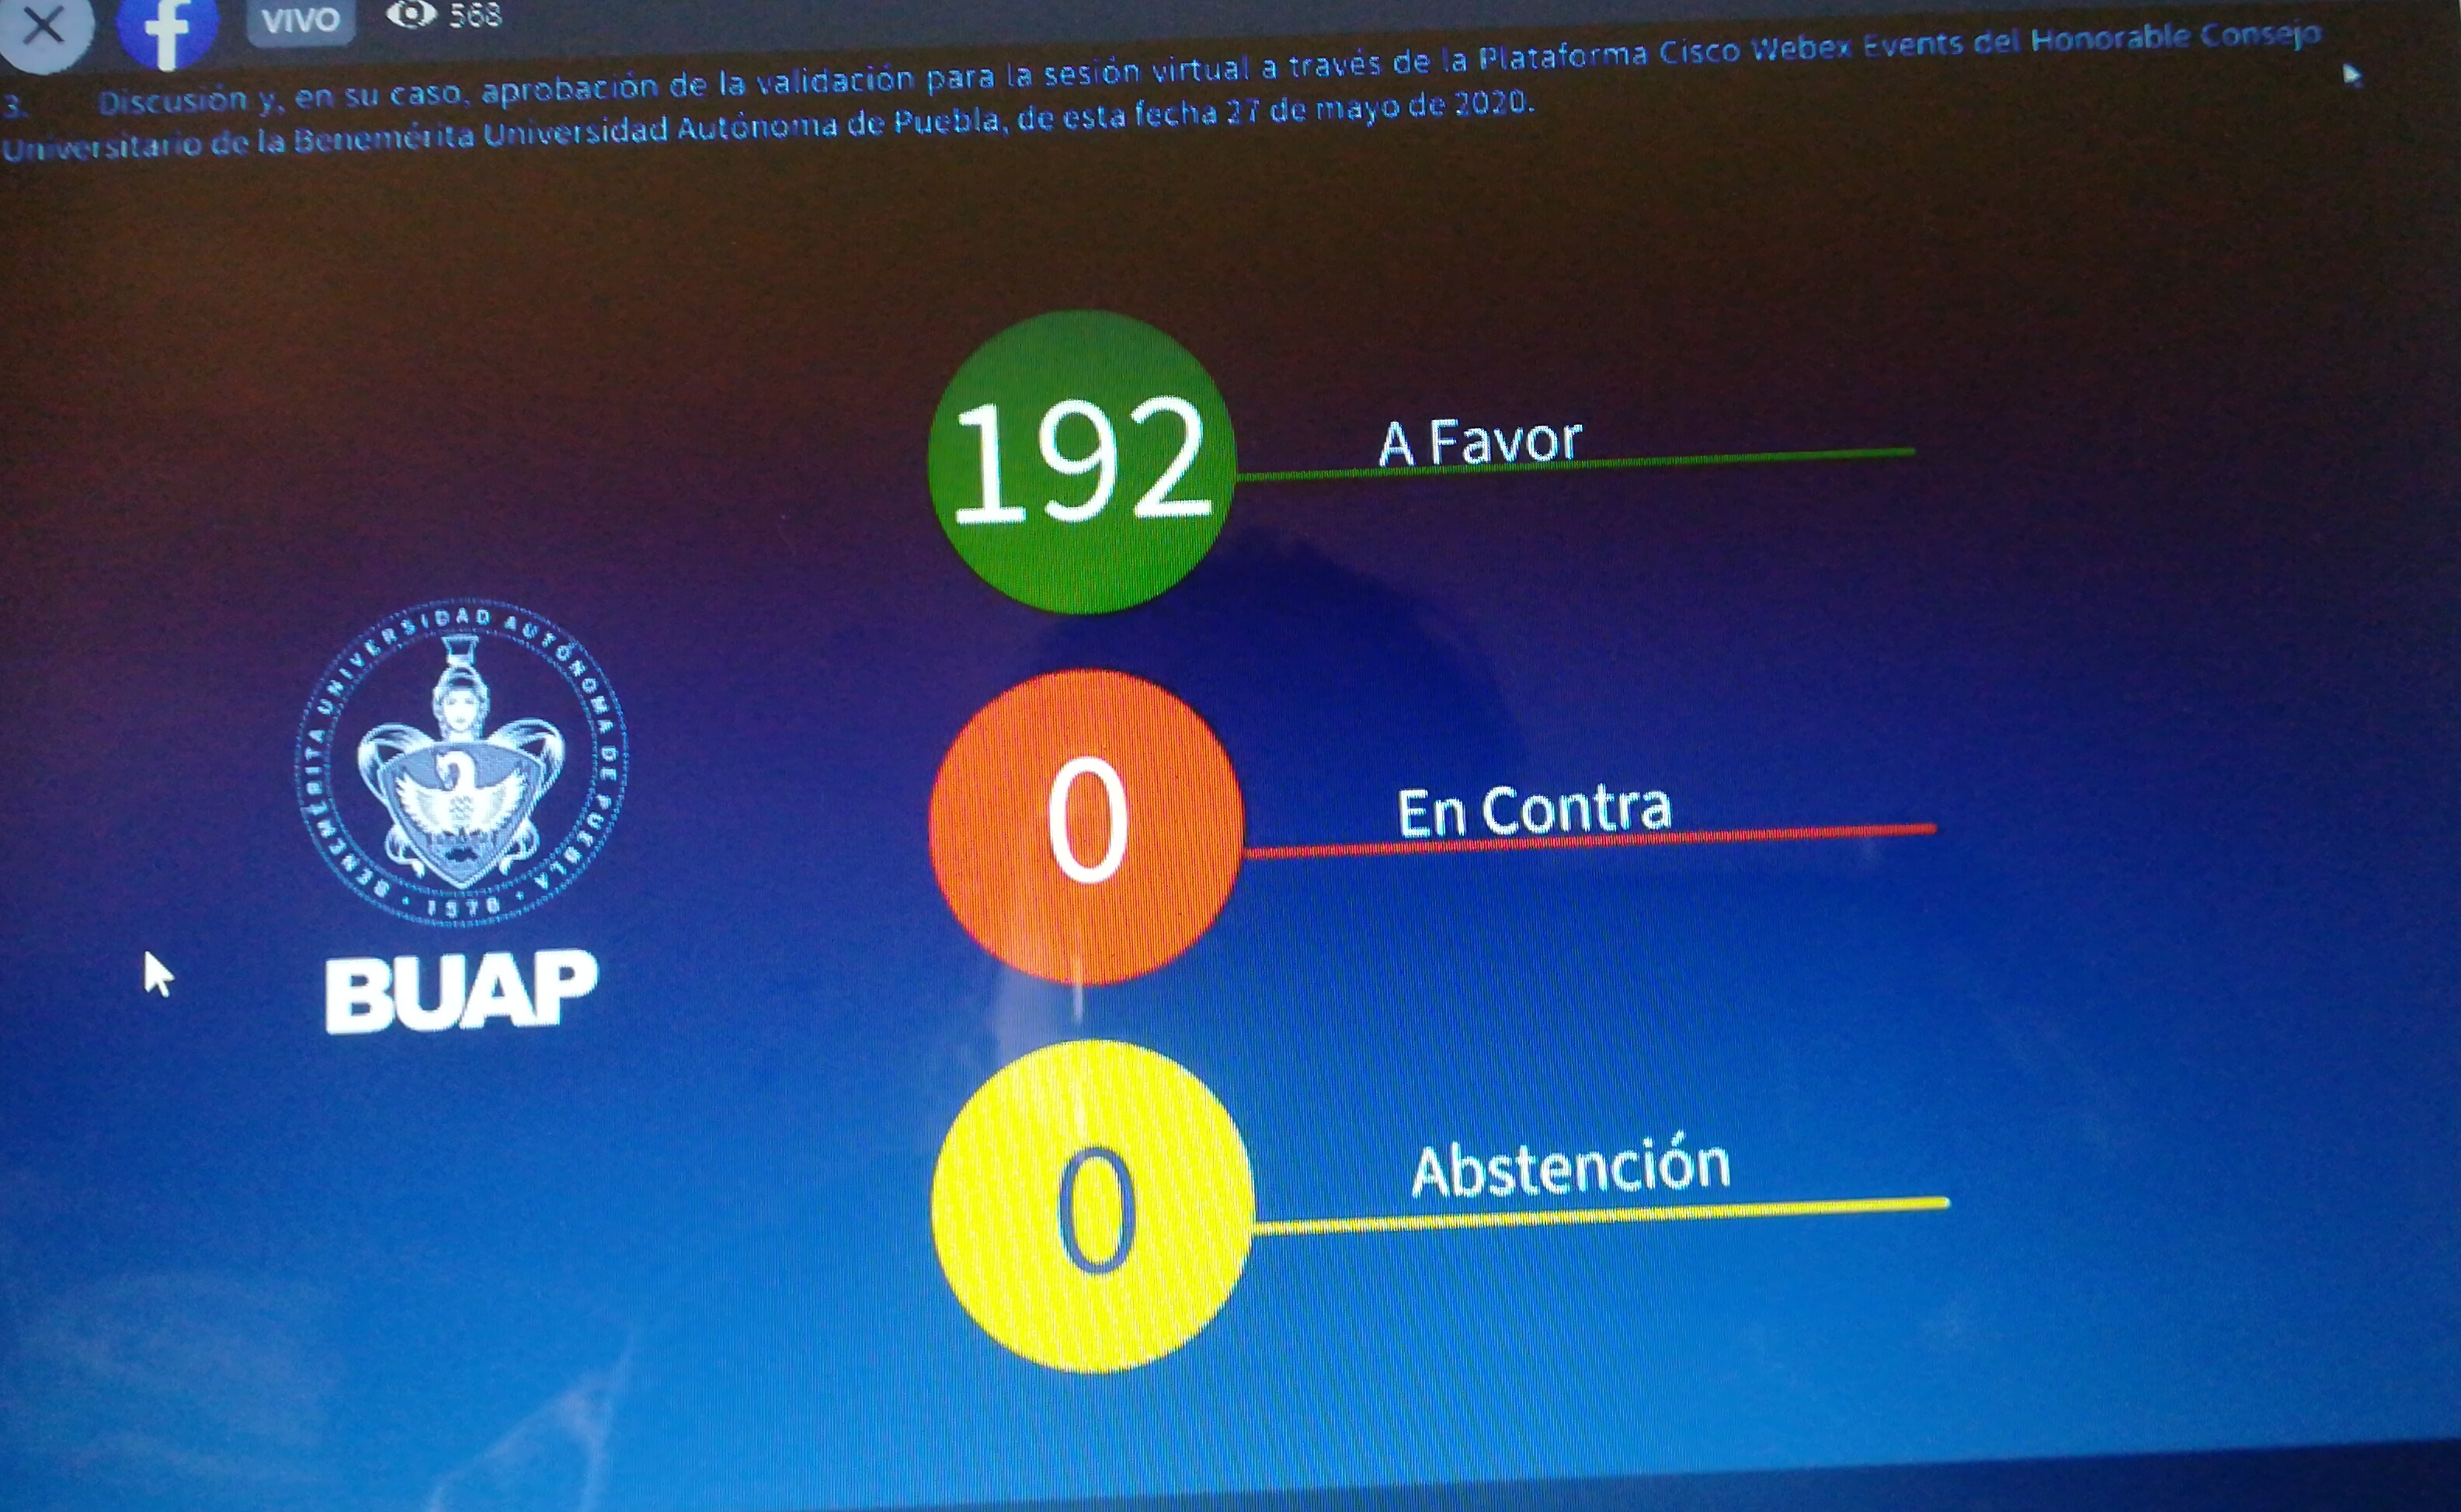 Video desde Puebla: Consejo Universitario de la BUAP avala sesiones virtuales por la pandemia covid-19.